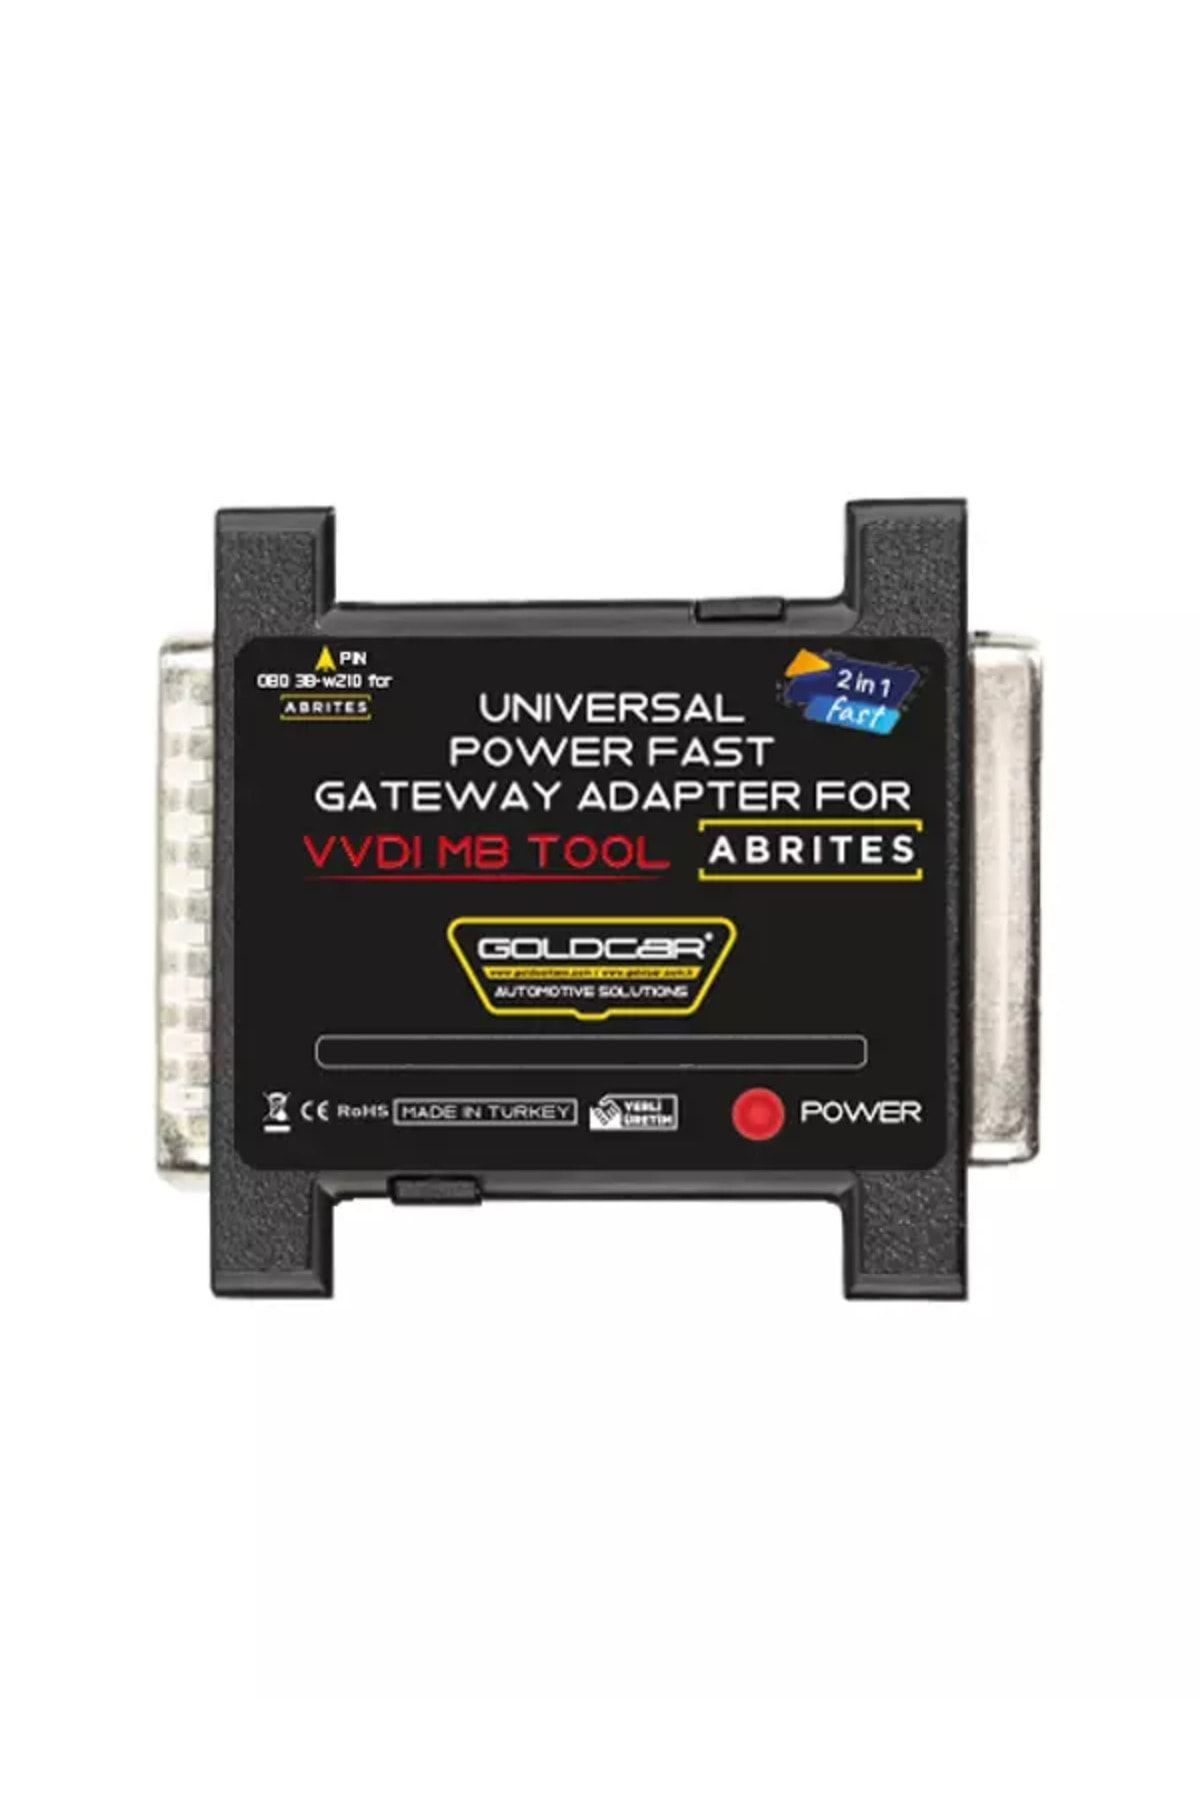 Goldcar Hızlı ve Evrensel Güçlendirici Adaptör - VVDI MB Tool ve Abrites için